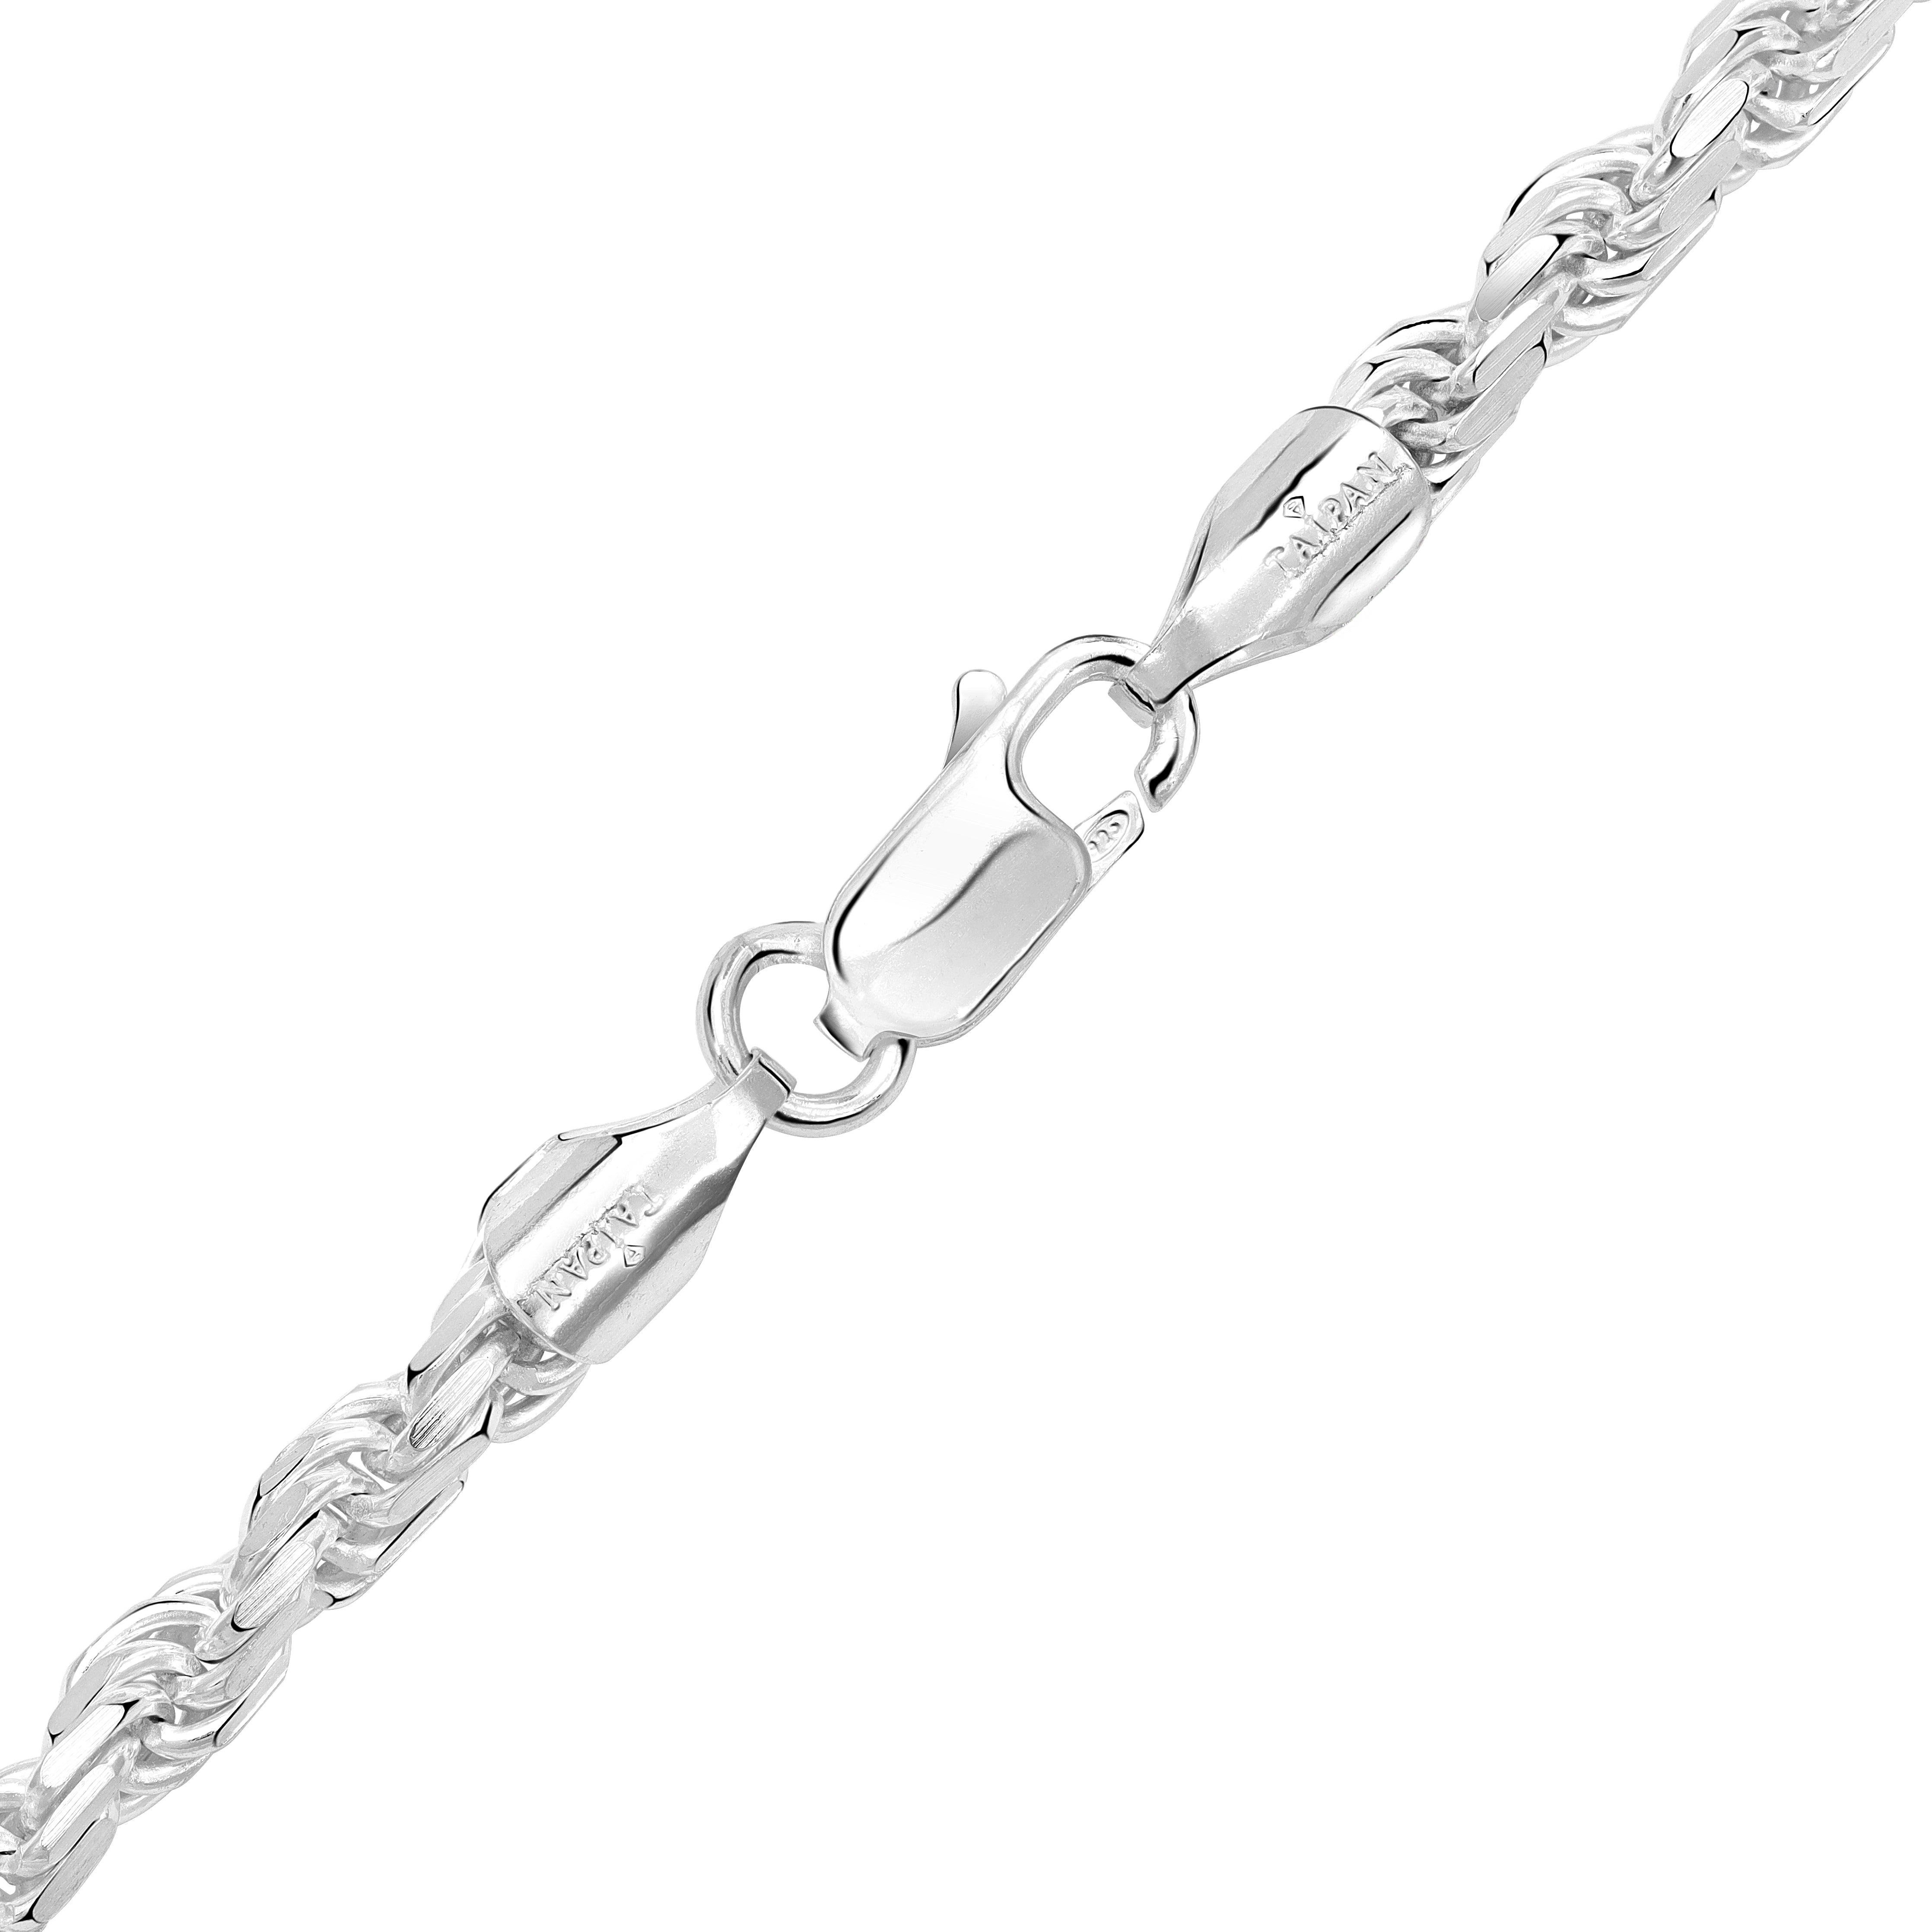 Kordelkette Rope Chain 3,5mm breit aus 925 Silber (diamantiert) - Taipan Schmuck